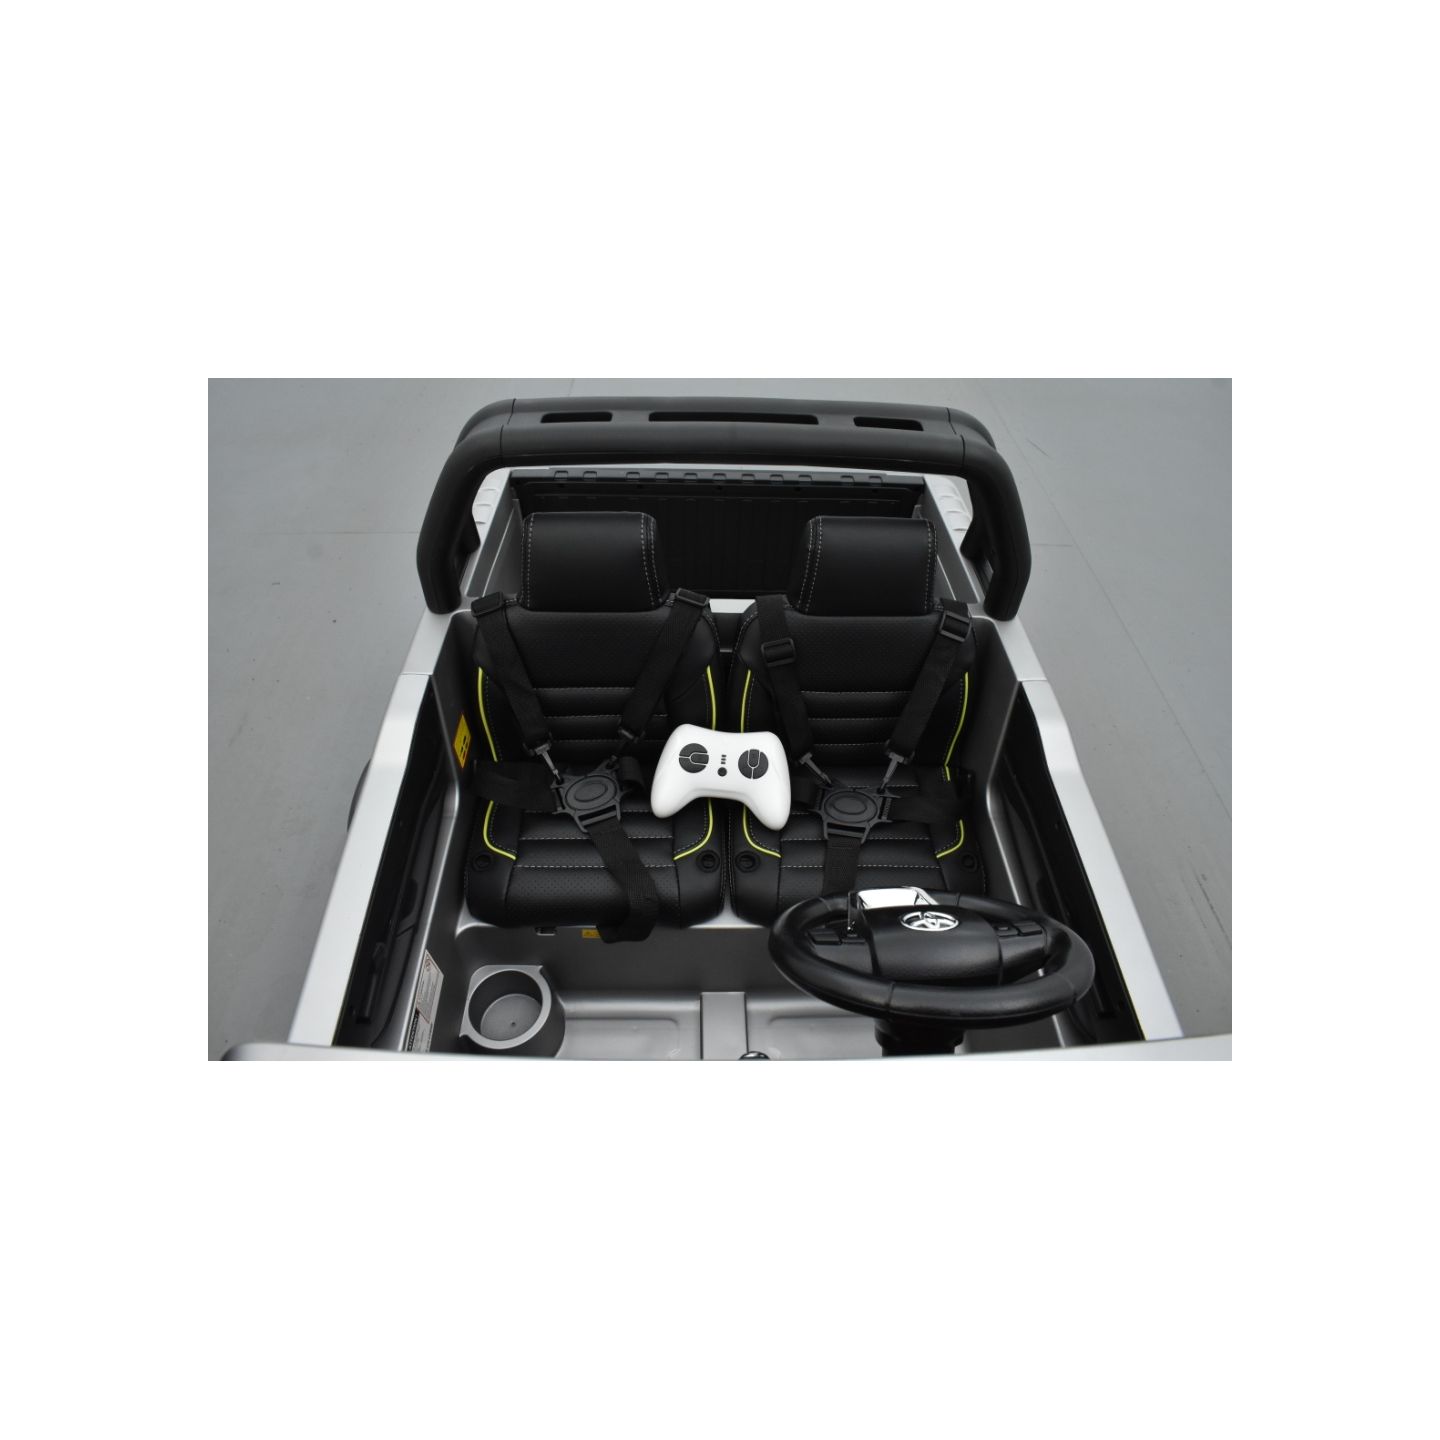 Toyota Hilux gris Mat 24 Volts électrique pour enfant écran mp4, 4x4 électrique enfant 2 places